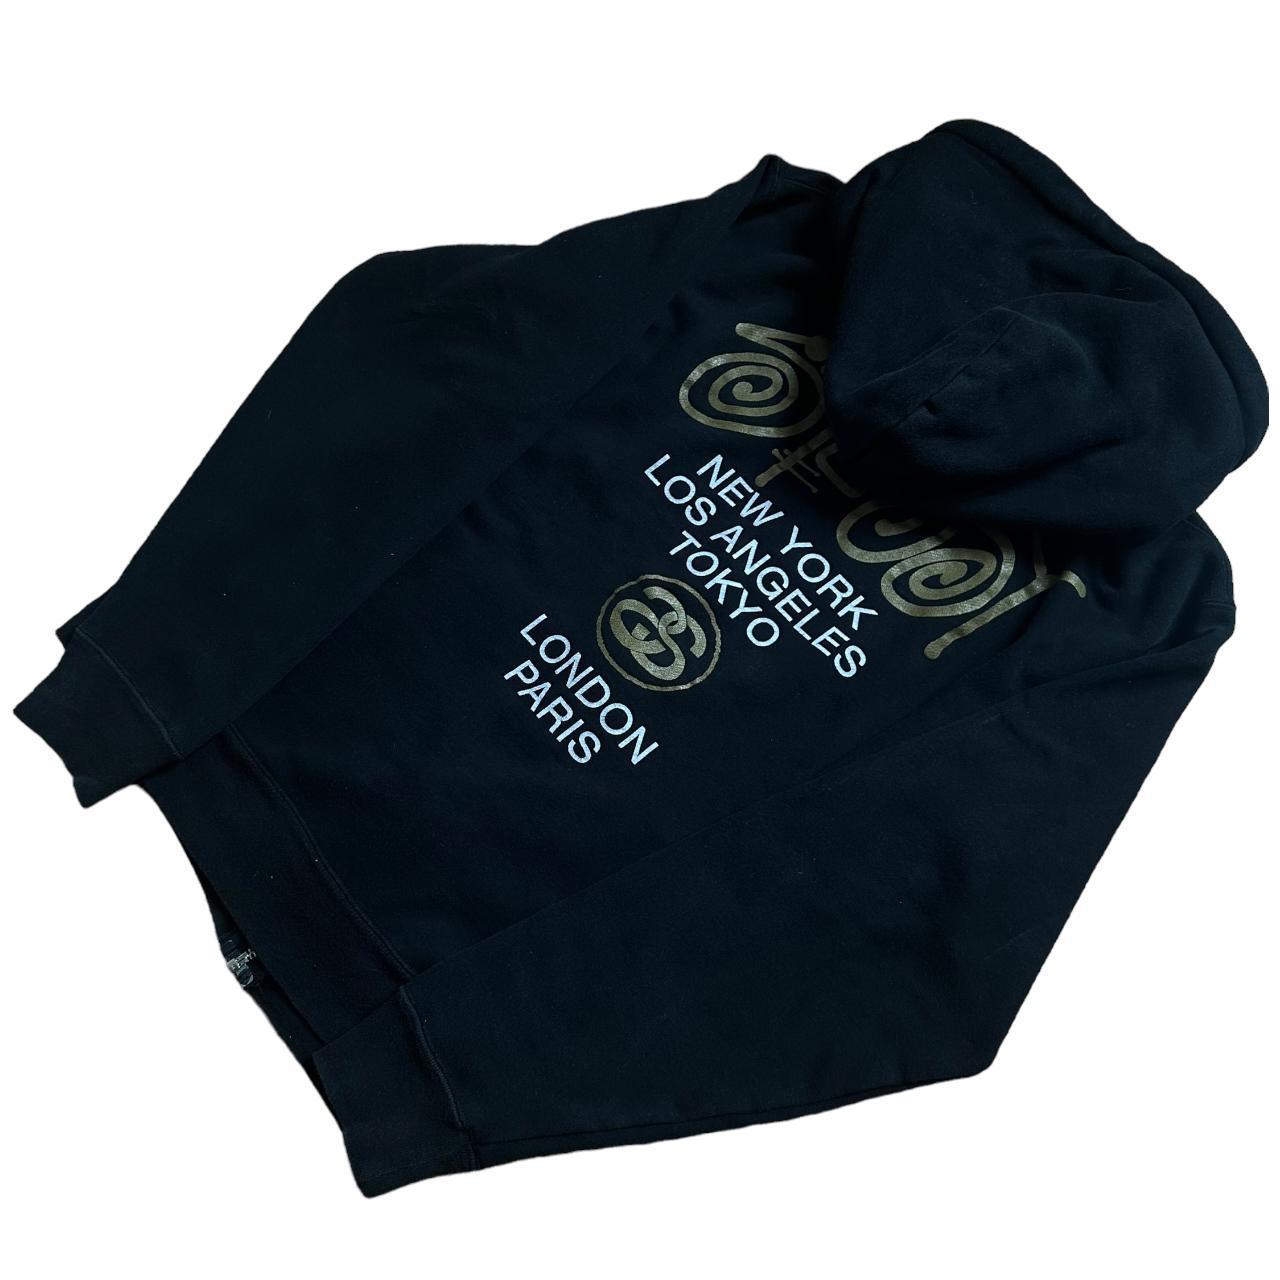 Stussy black gold zip up hoodie - Known Source